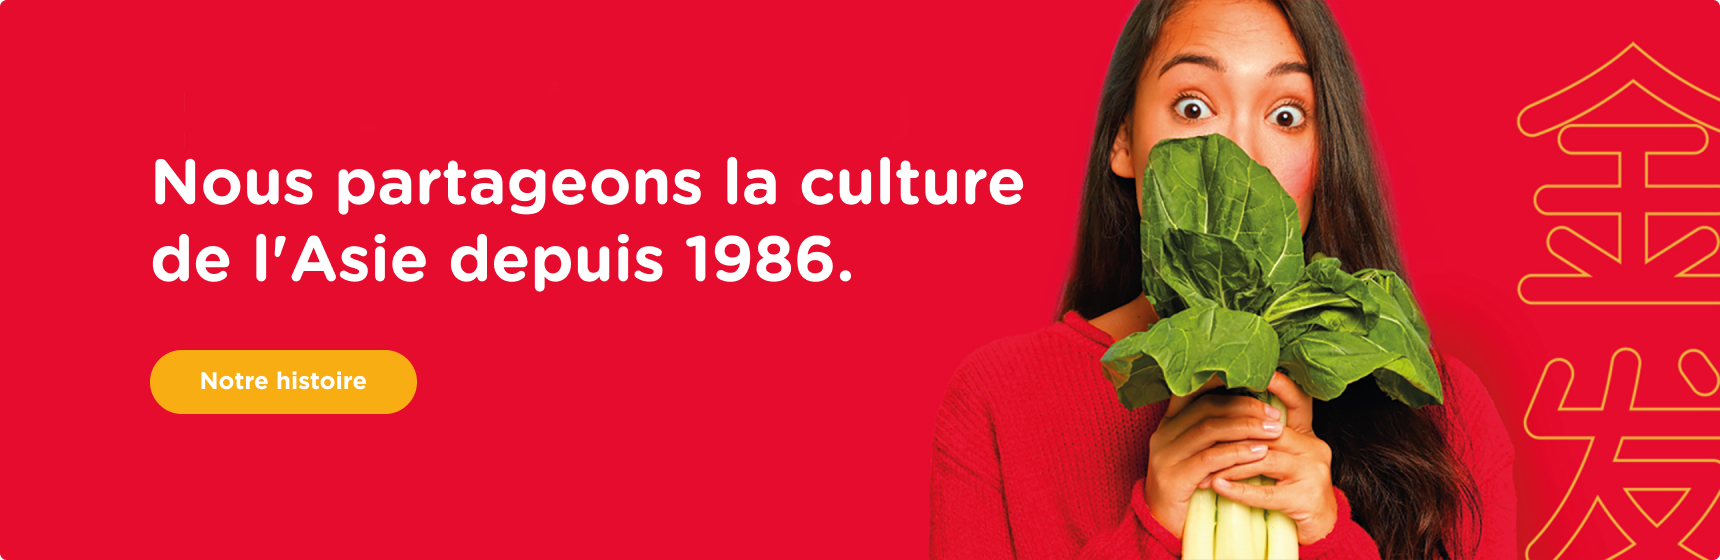 Nous partageons la culture de l'Asie depuis 1986.